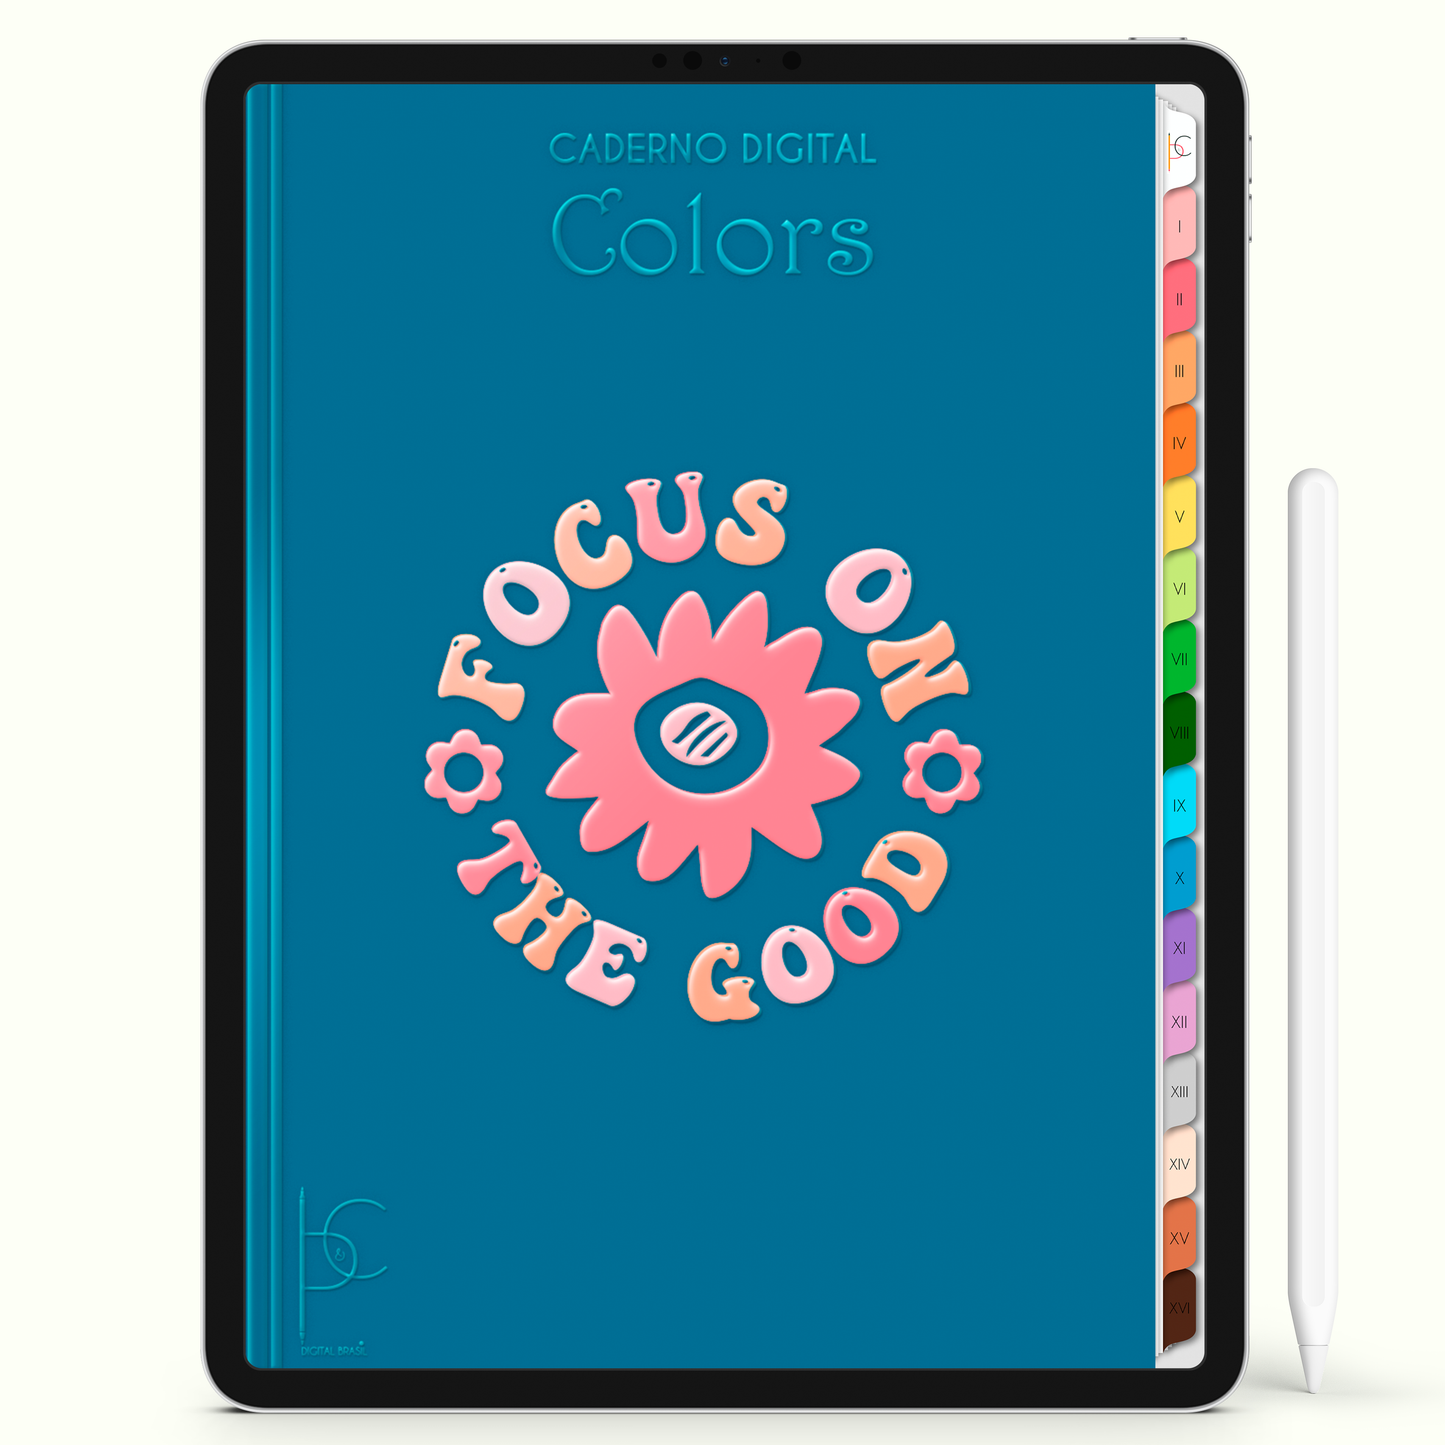 Caderno Digital Colors  Study Focus 16 Matérias • Para iPad e Tablet Android • Download instantâneo • Sustentável